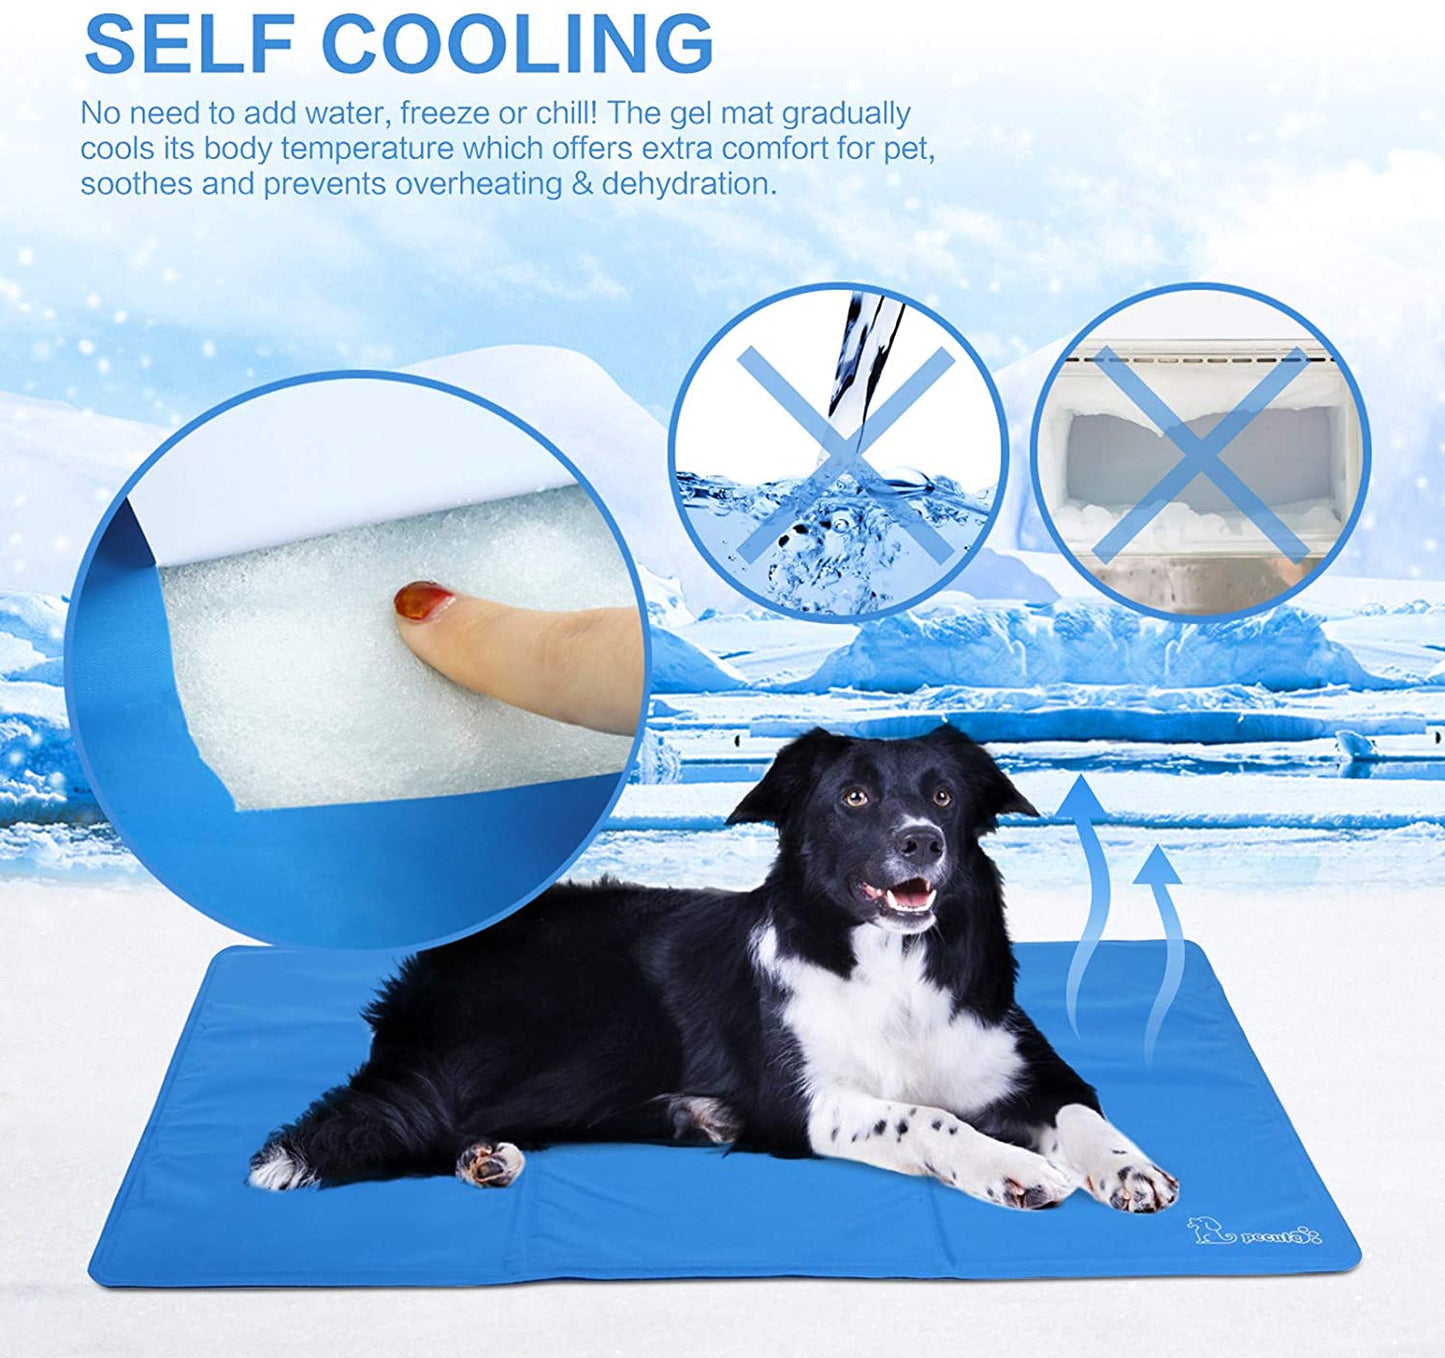 Pecute - Tapete de resfriamento para cães médio 65x50cm